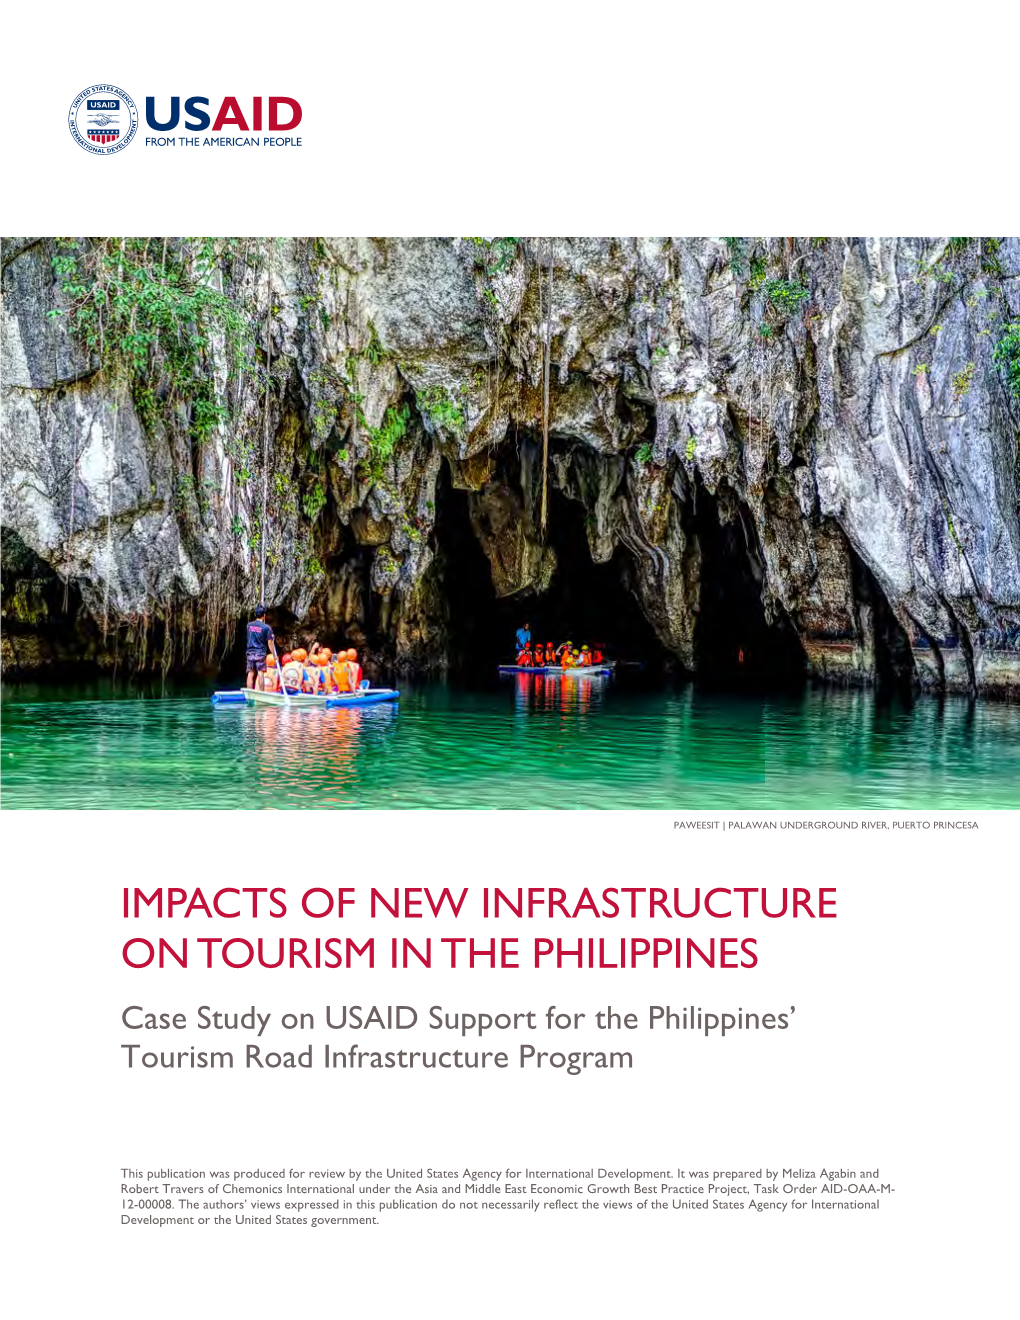 tourism impacts case study